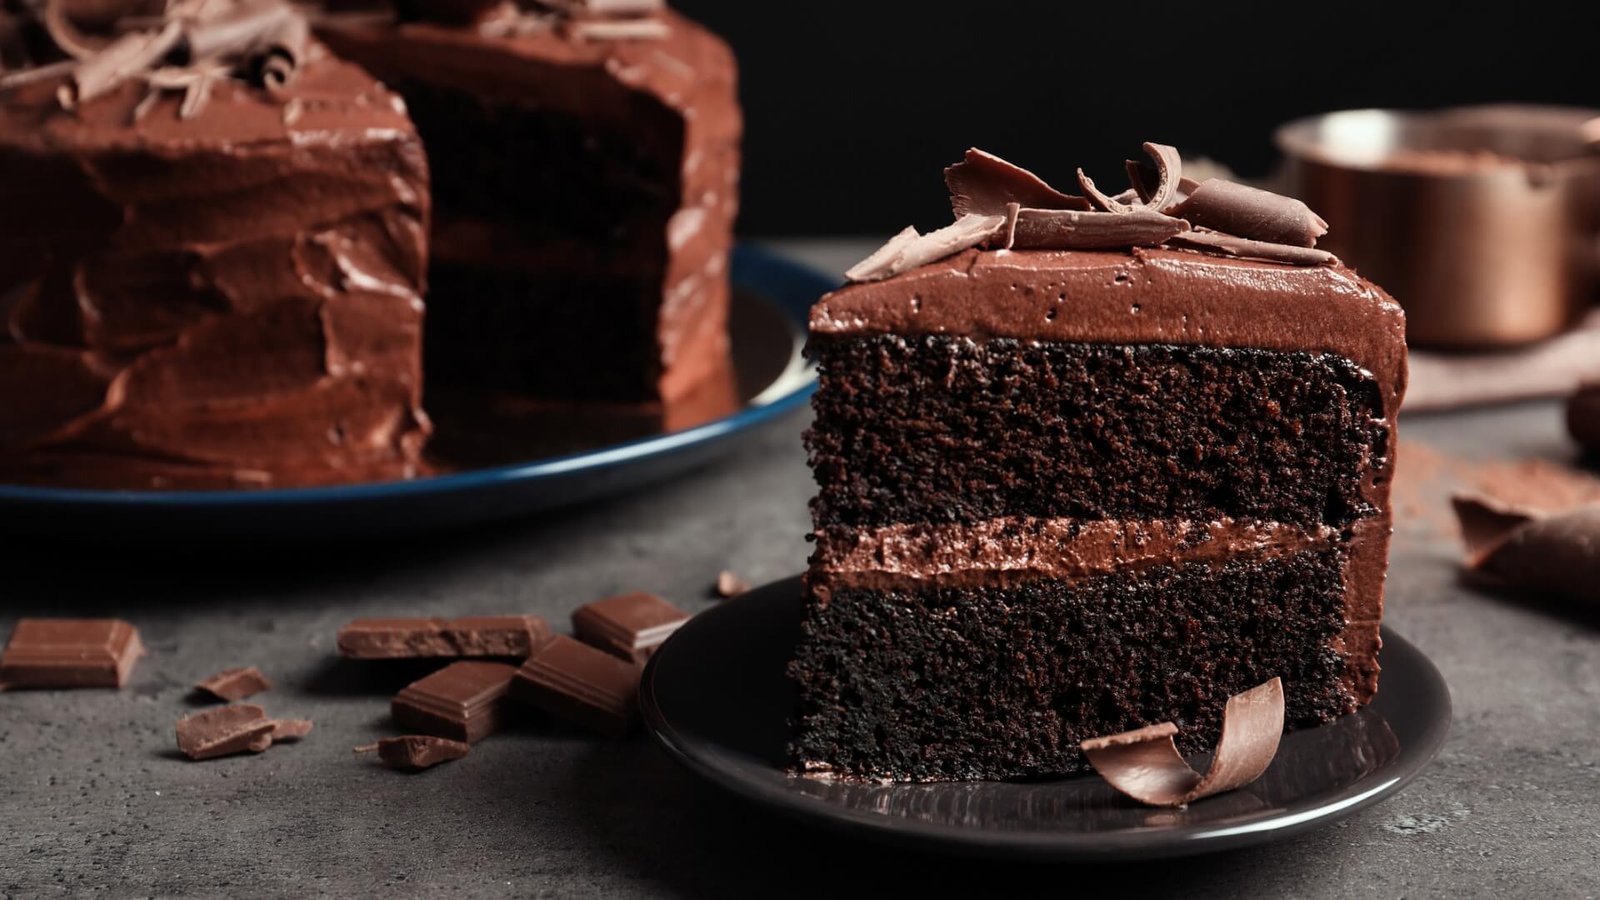 How to make marijuana chocolate cake at home?